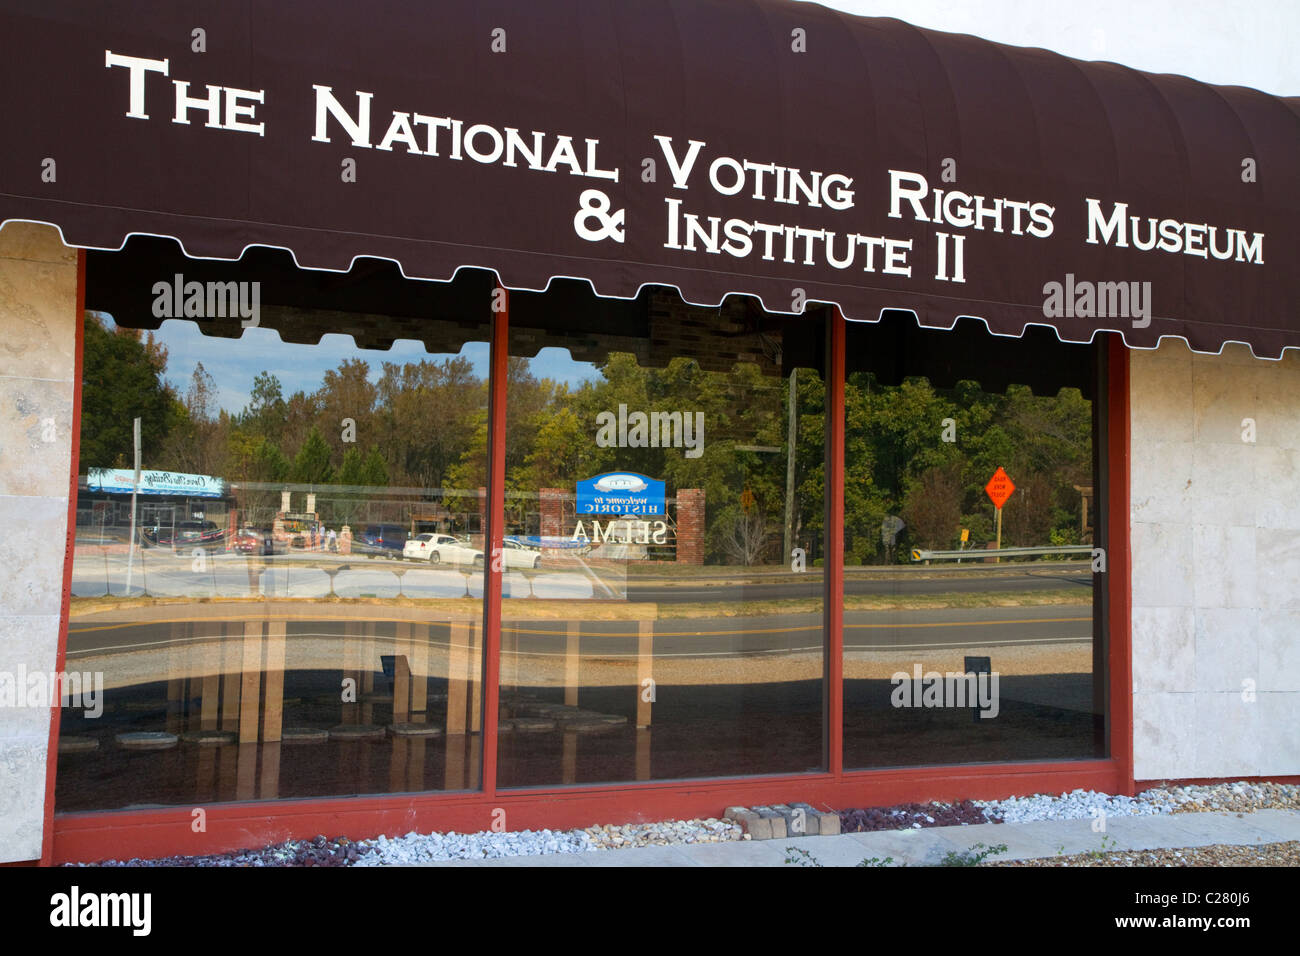 El Museo Nacional de Derechos de voto y el Instituto situado en Selma, Alabama, Estados Unidos. Foto de stock